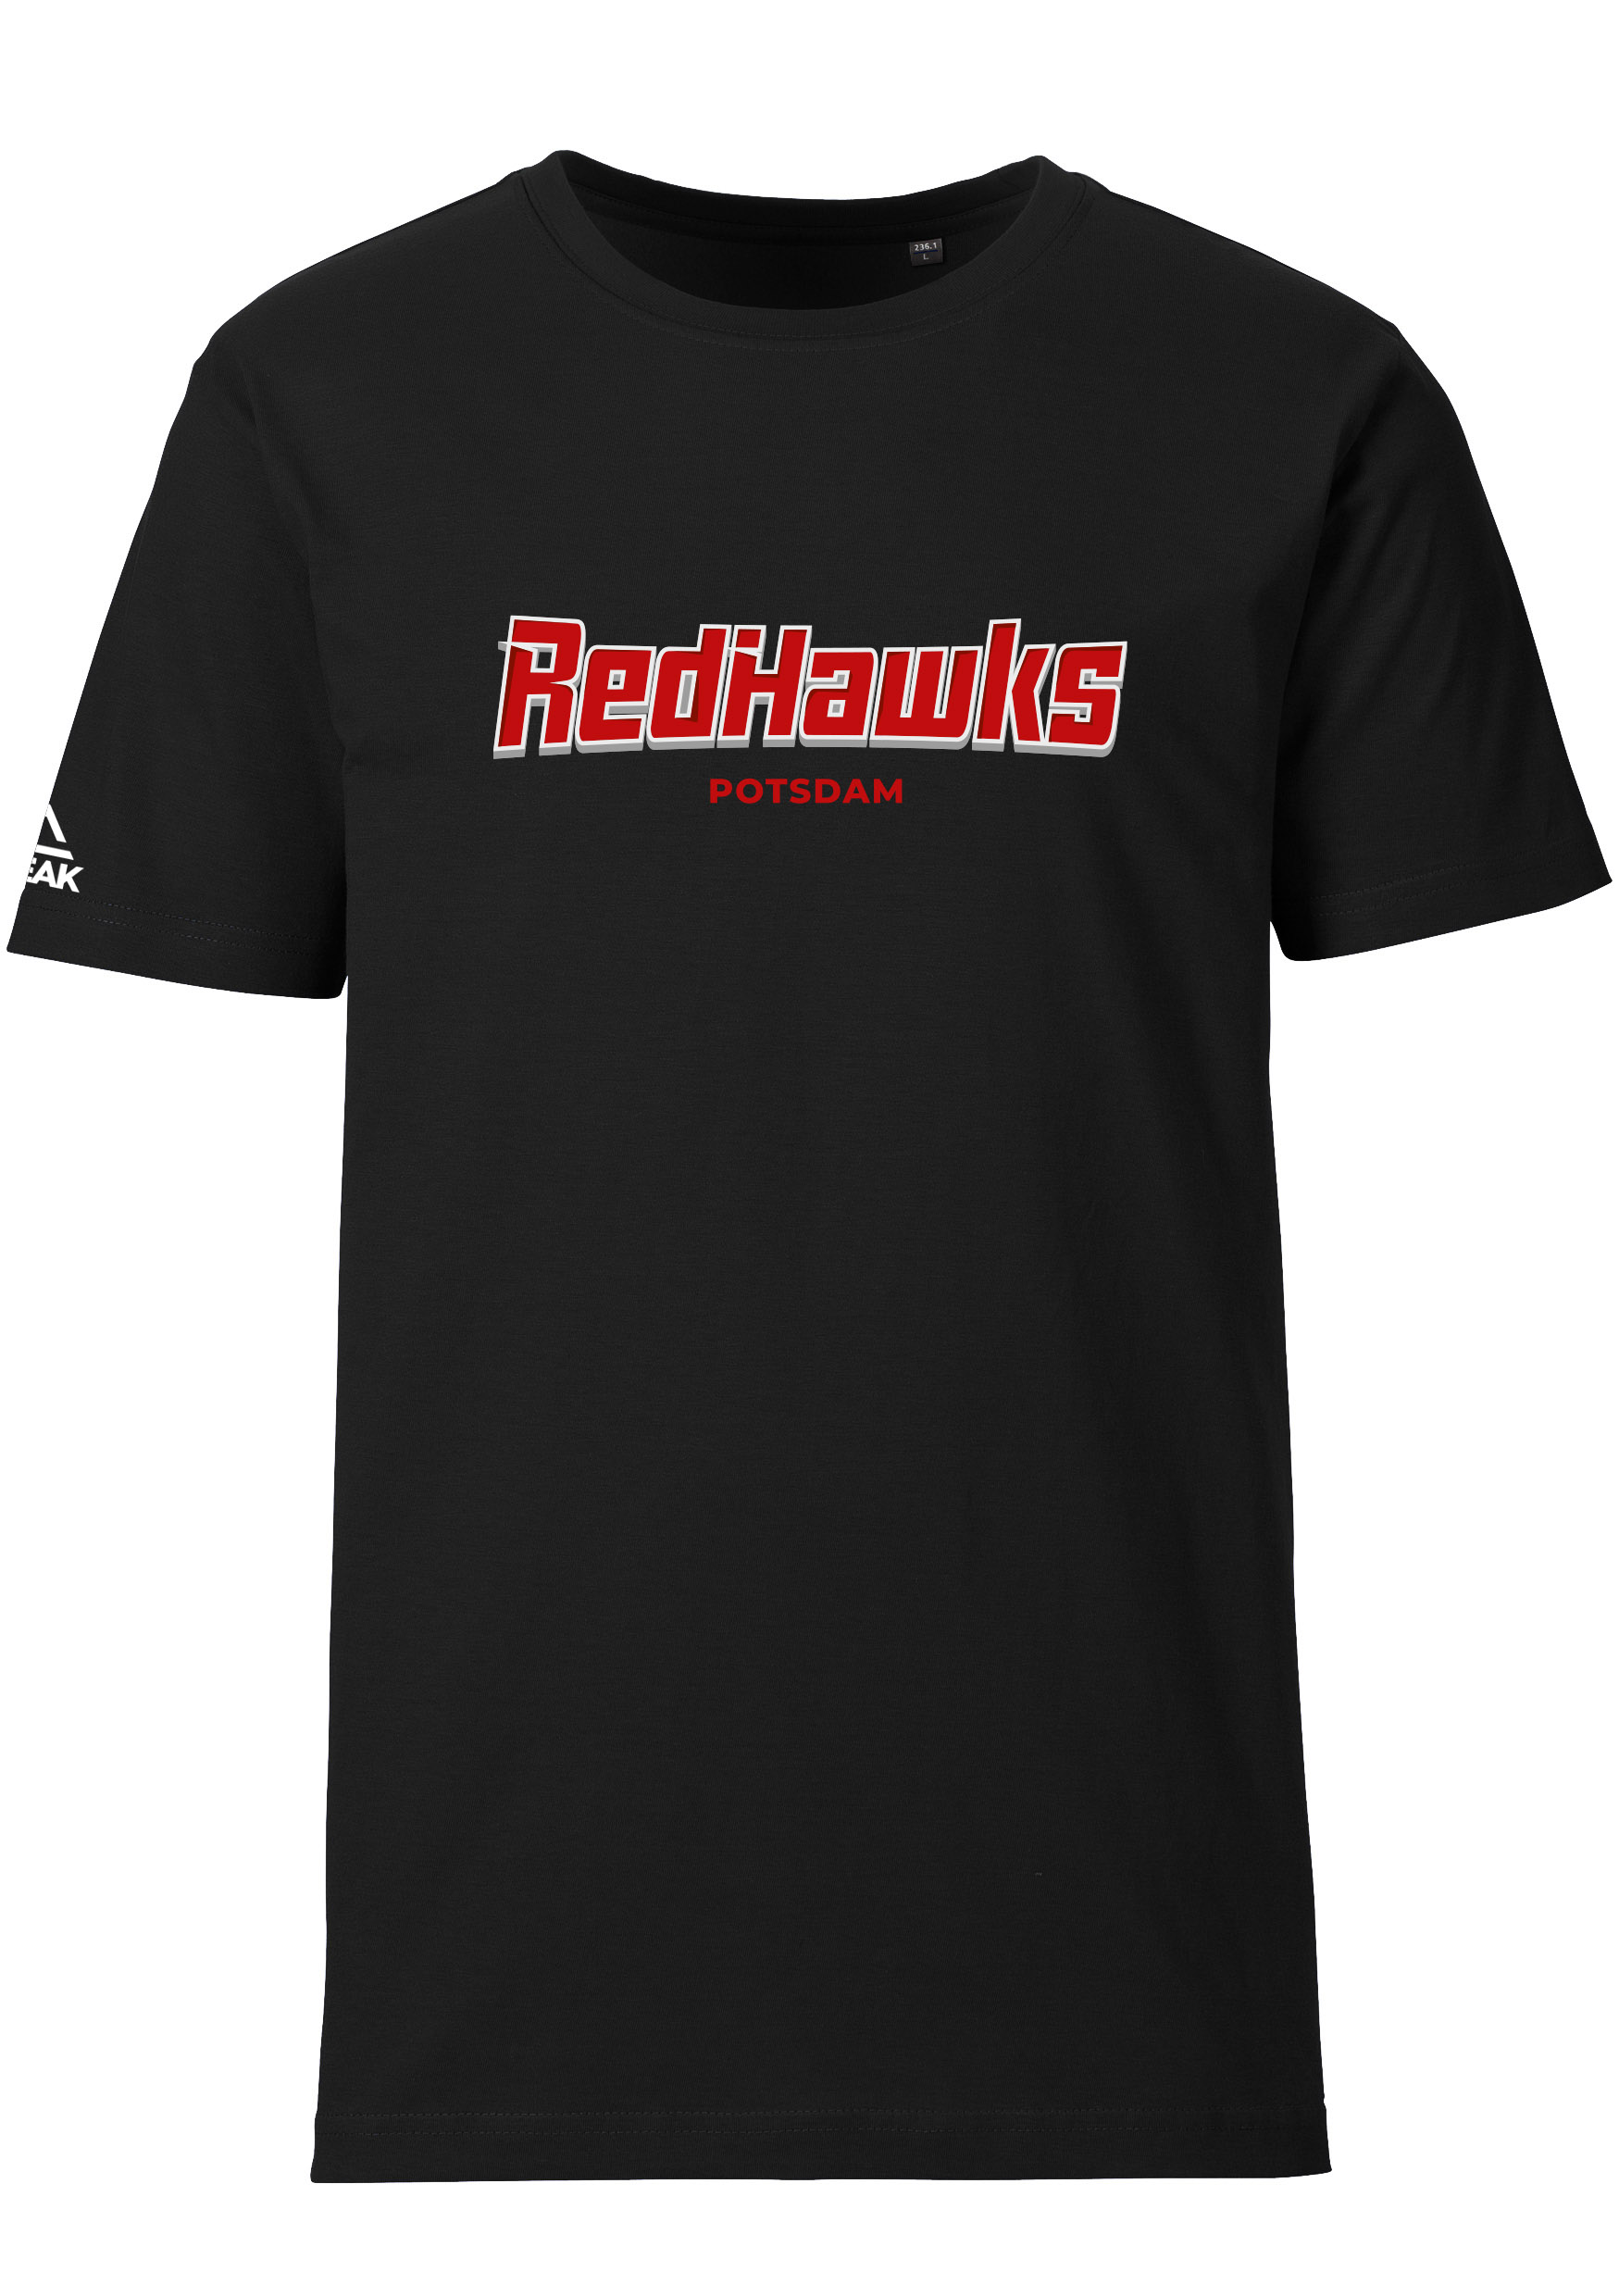 RedHawks Potsdam T-Shirt Schriftzug